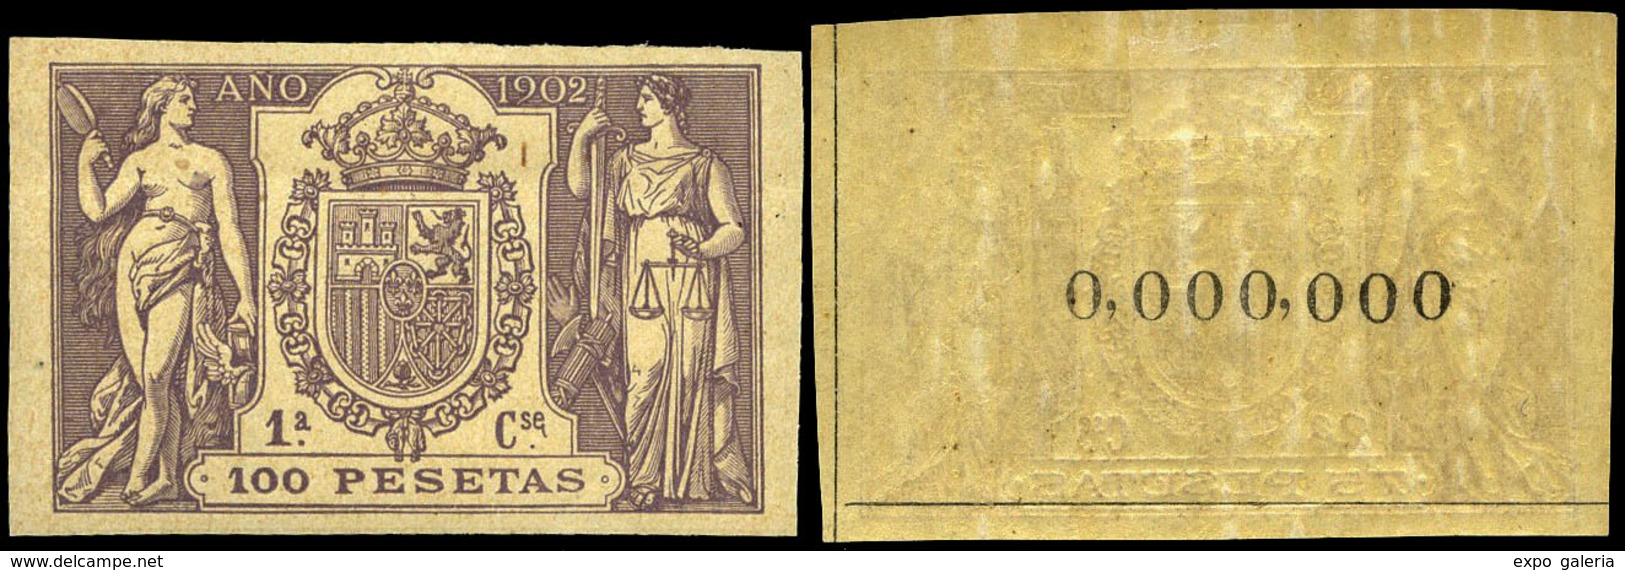 Alemany 499/509 - 1902. Pólizas. 11 Valores. Serie Completa Con Numeración 000.000 Al Dorso. Goma Original - Revenue Stamps